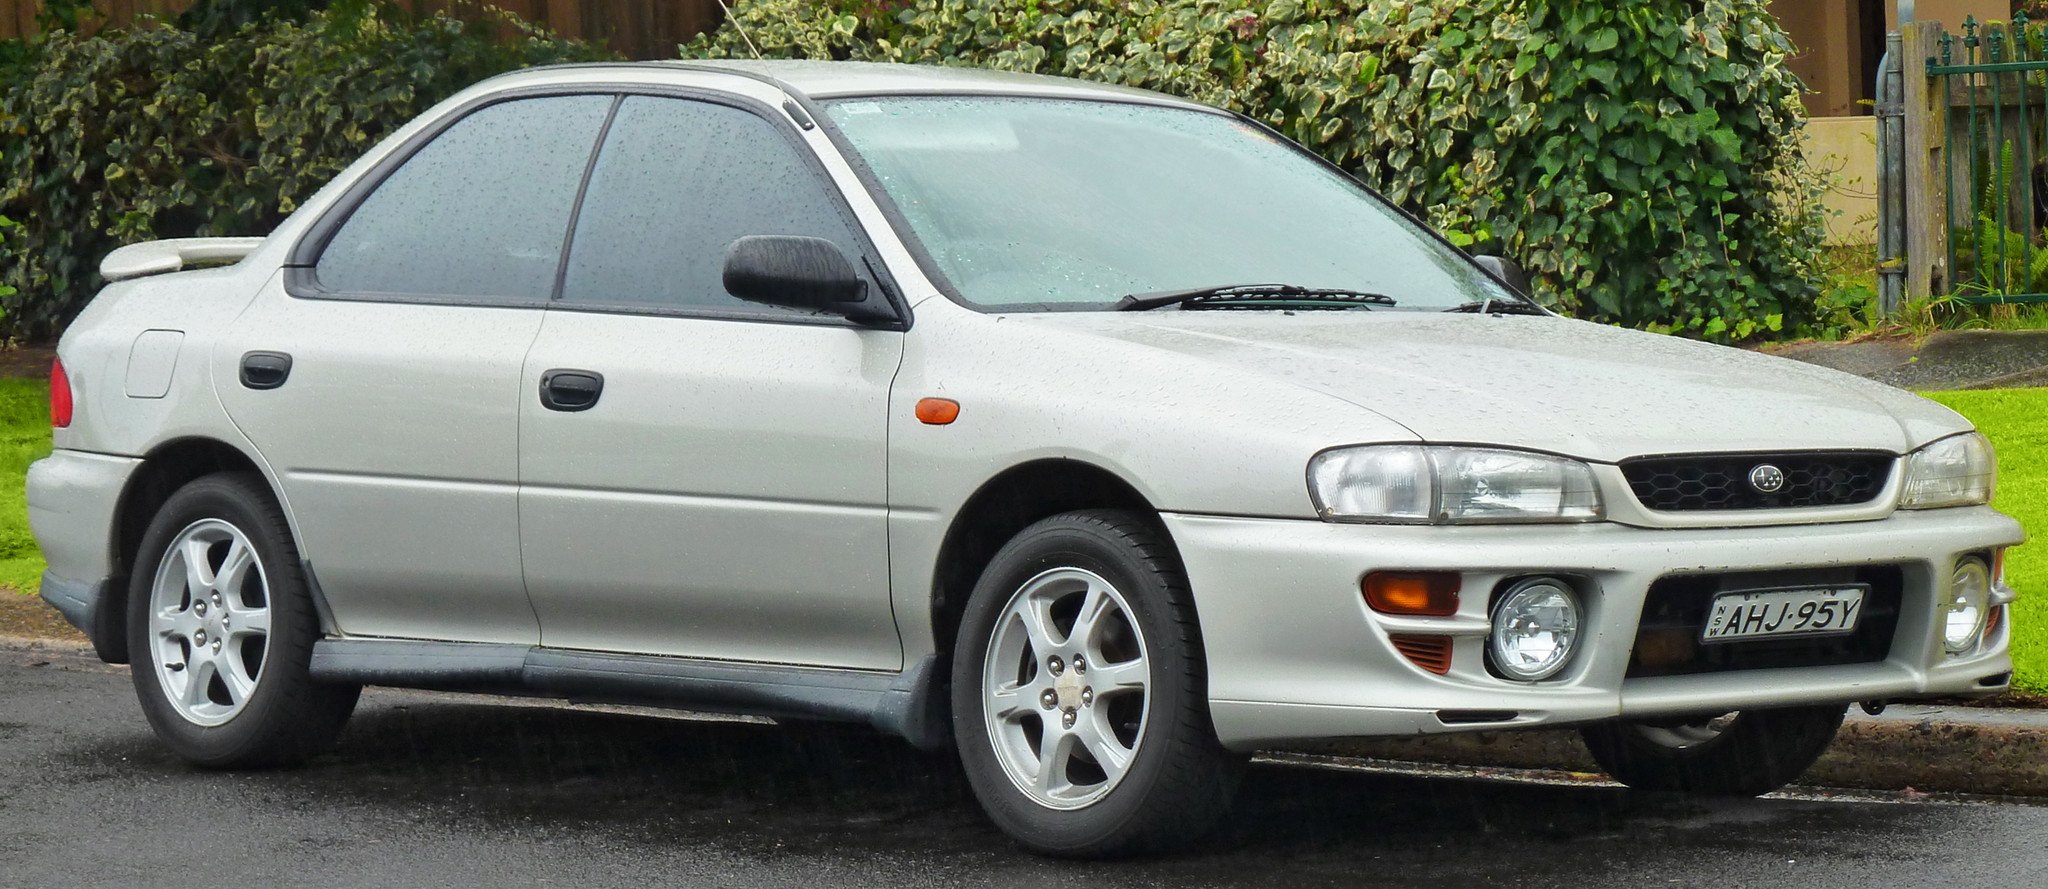 1997 1998 Subaru Impreza Service Repair Manual